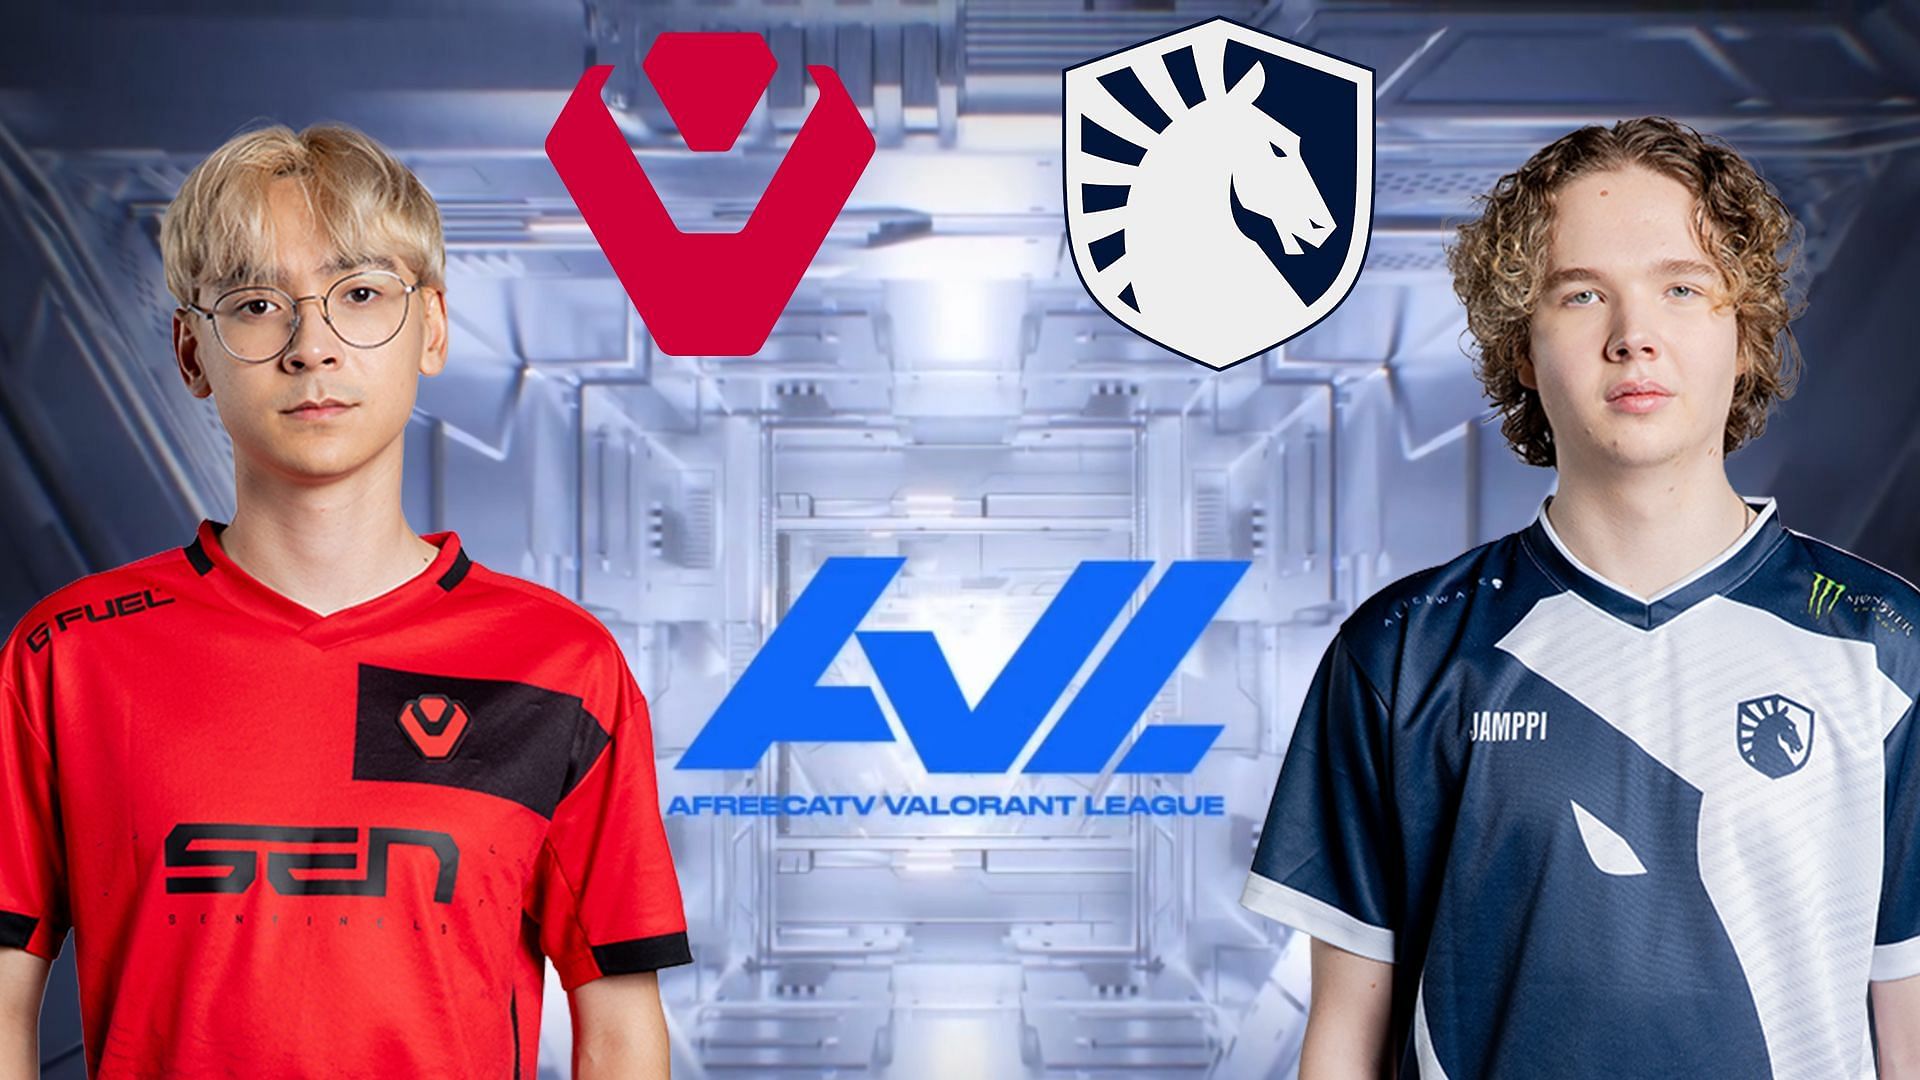 Sentinels vs Team Liquid - AfreecaTV Valorant League (Image via Sportskeeda)